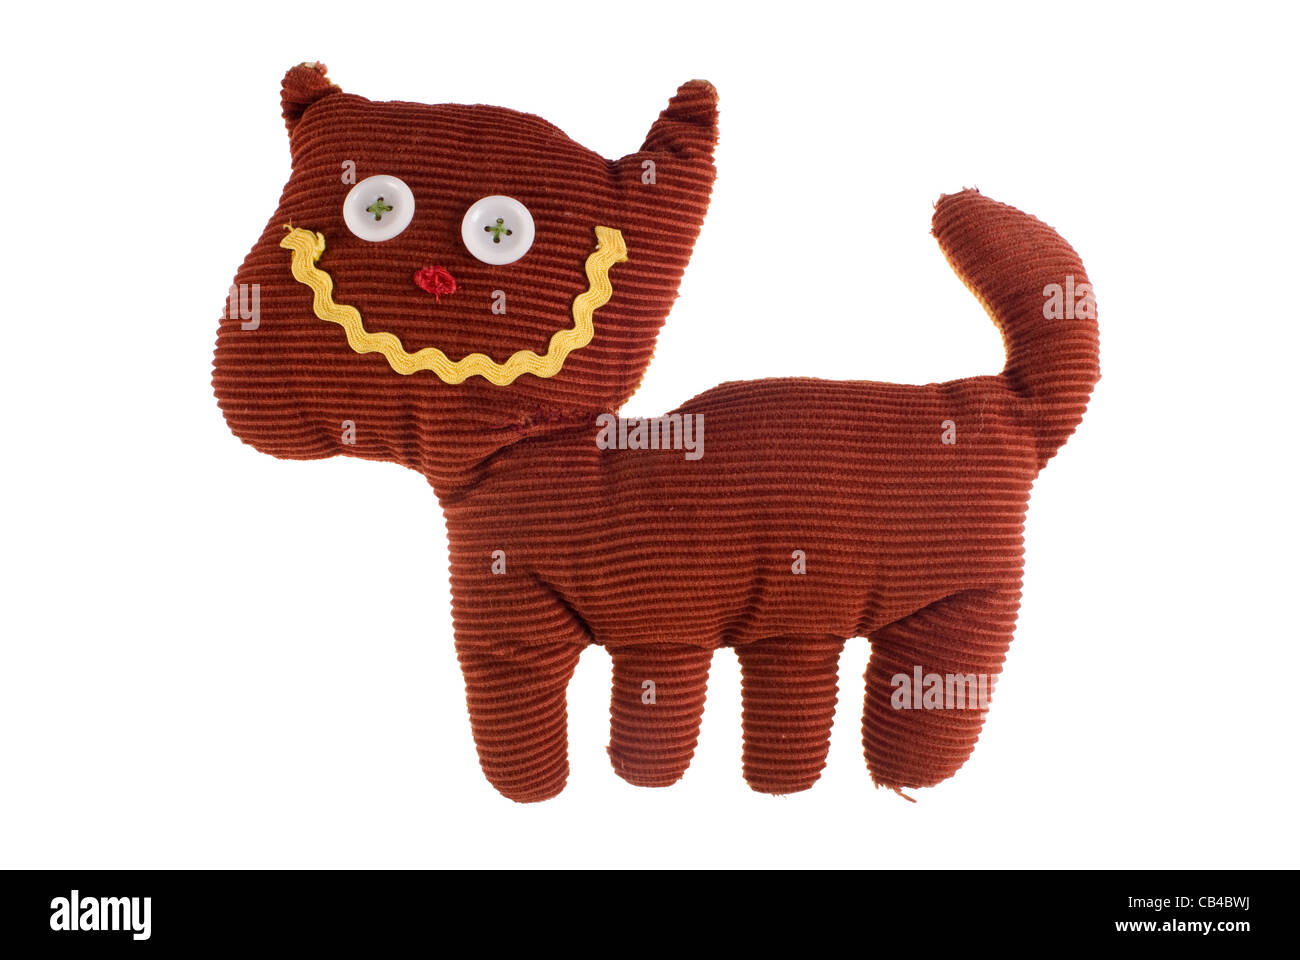 Un sourire de chat avec teddy tissu isolé sur fond blanc. Inclus chemin de détourage, de sorte que vous pouvez facilement le découper et le placer sur le dessus d'un dessin ou modèle. Banque D'Images